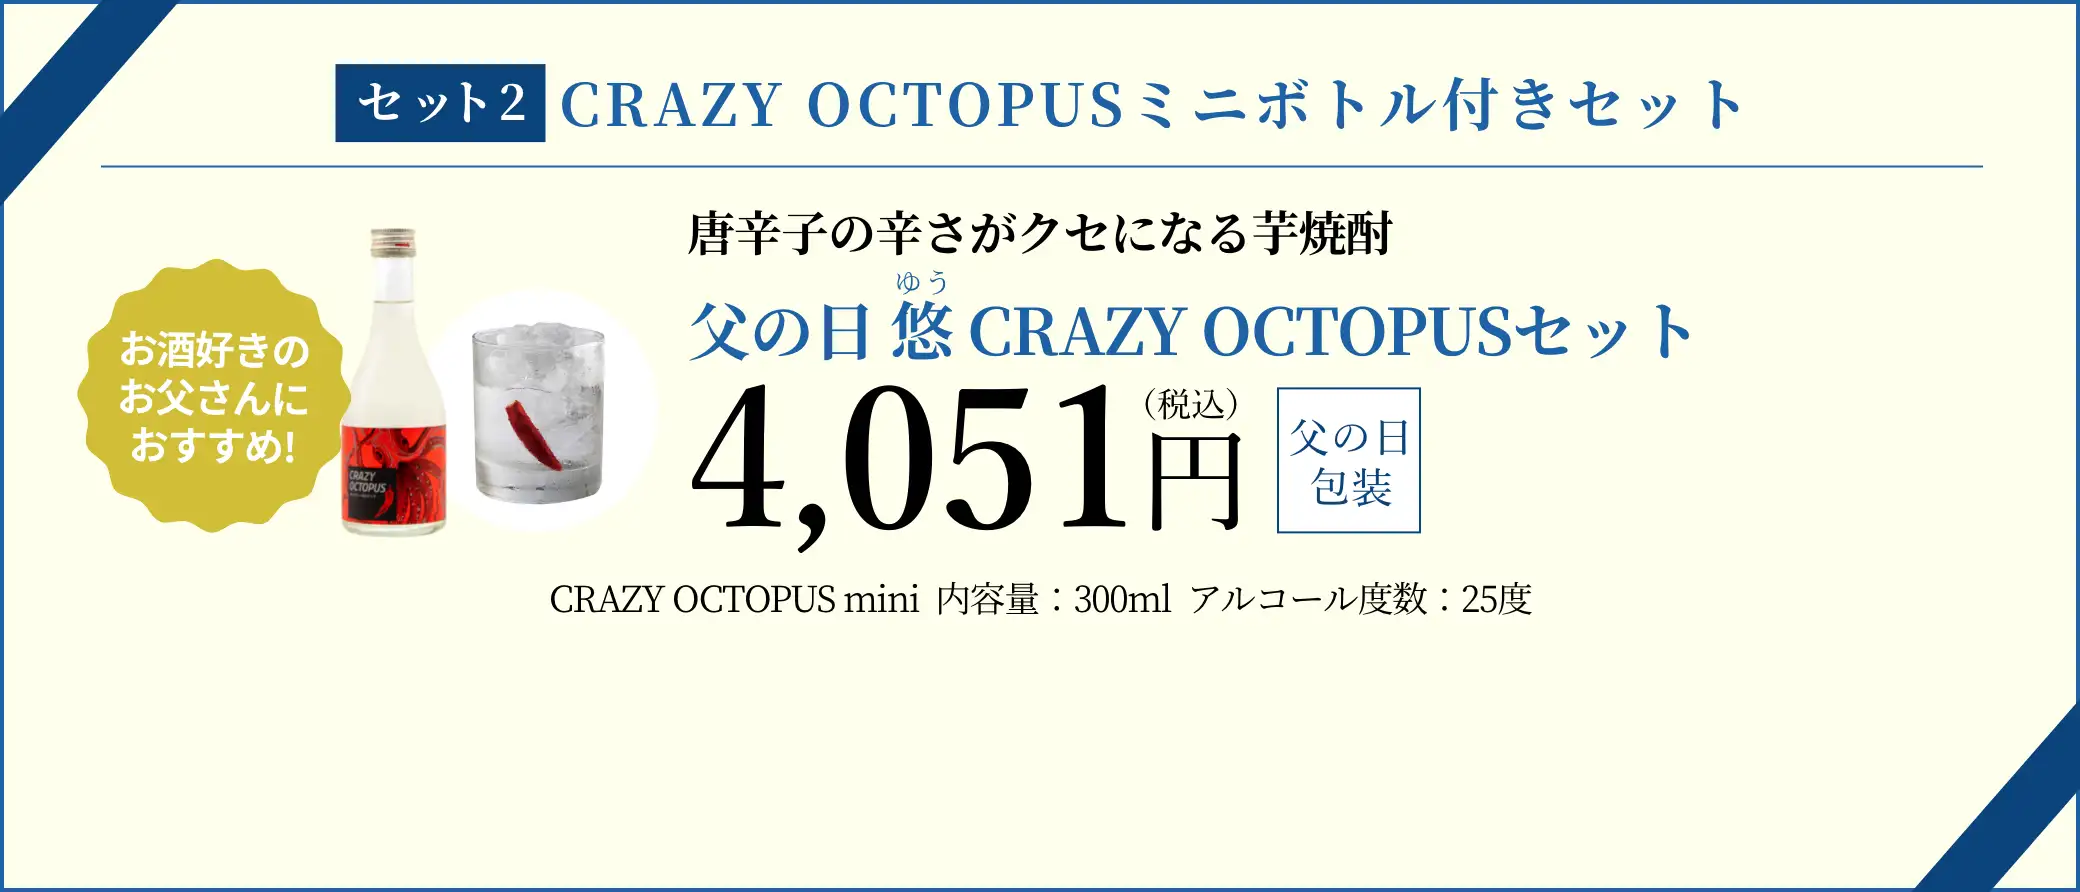 父の日 悠 CRAZY OCTOPUSセット 4,051円(税込/父の日包装)